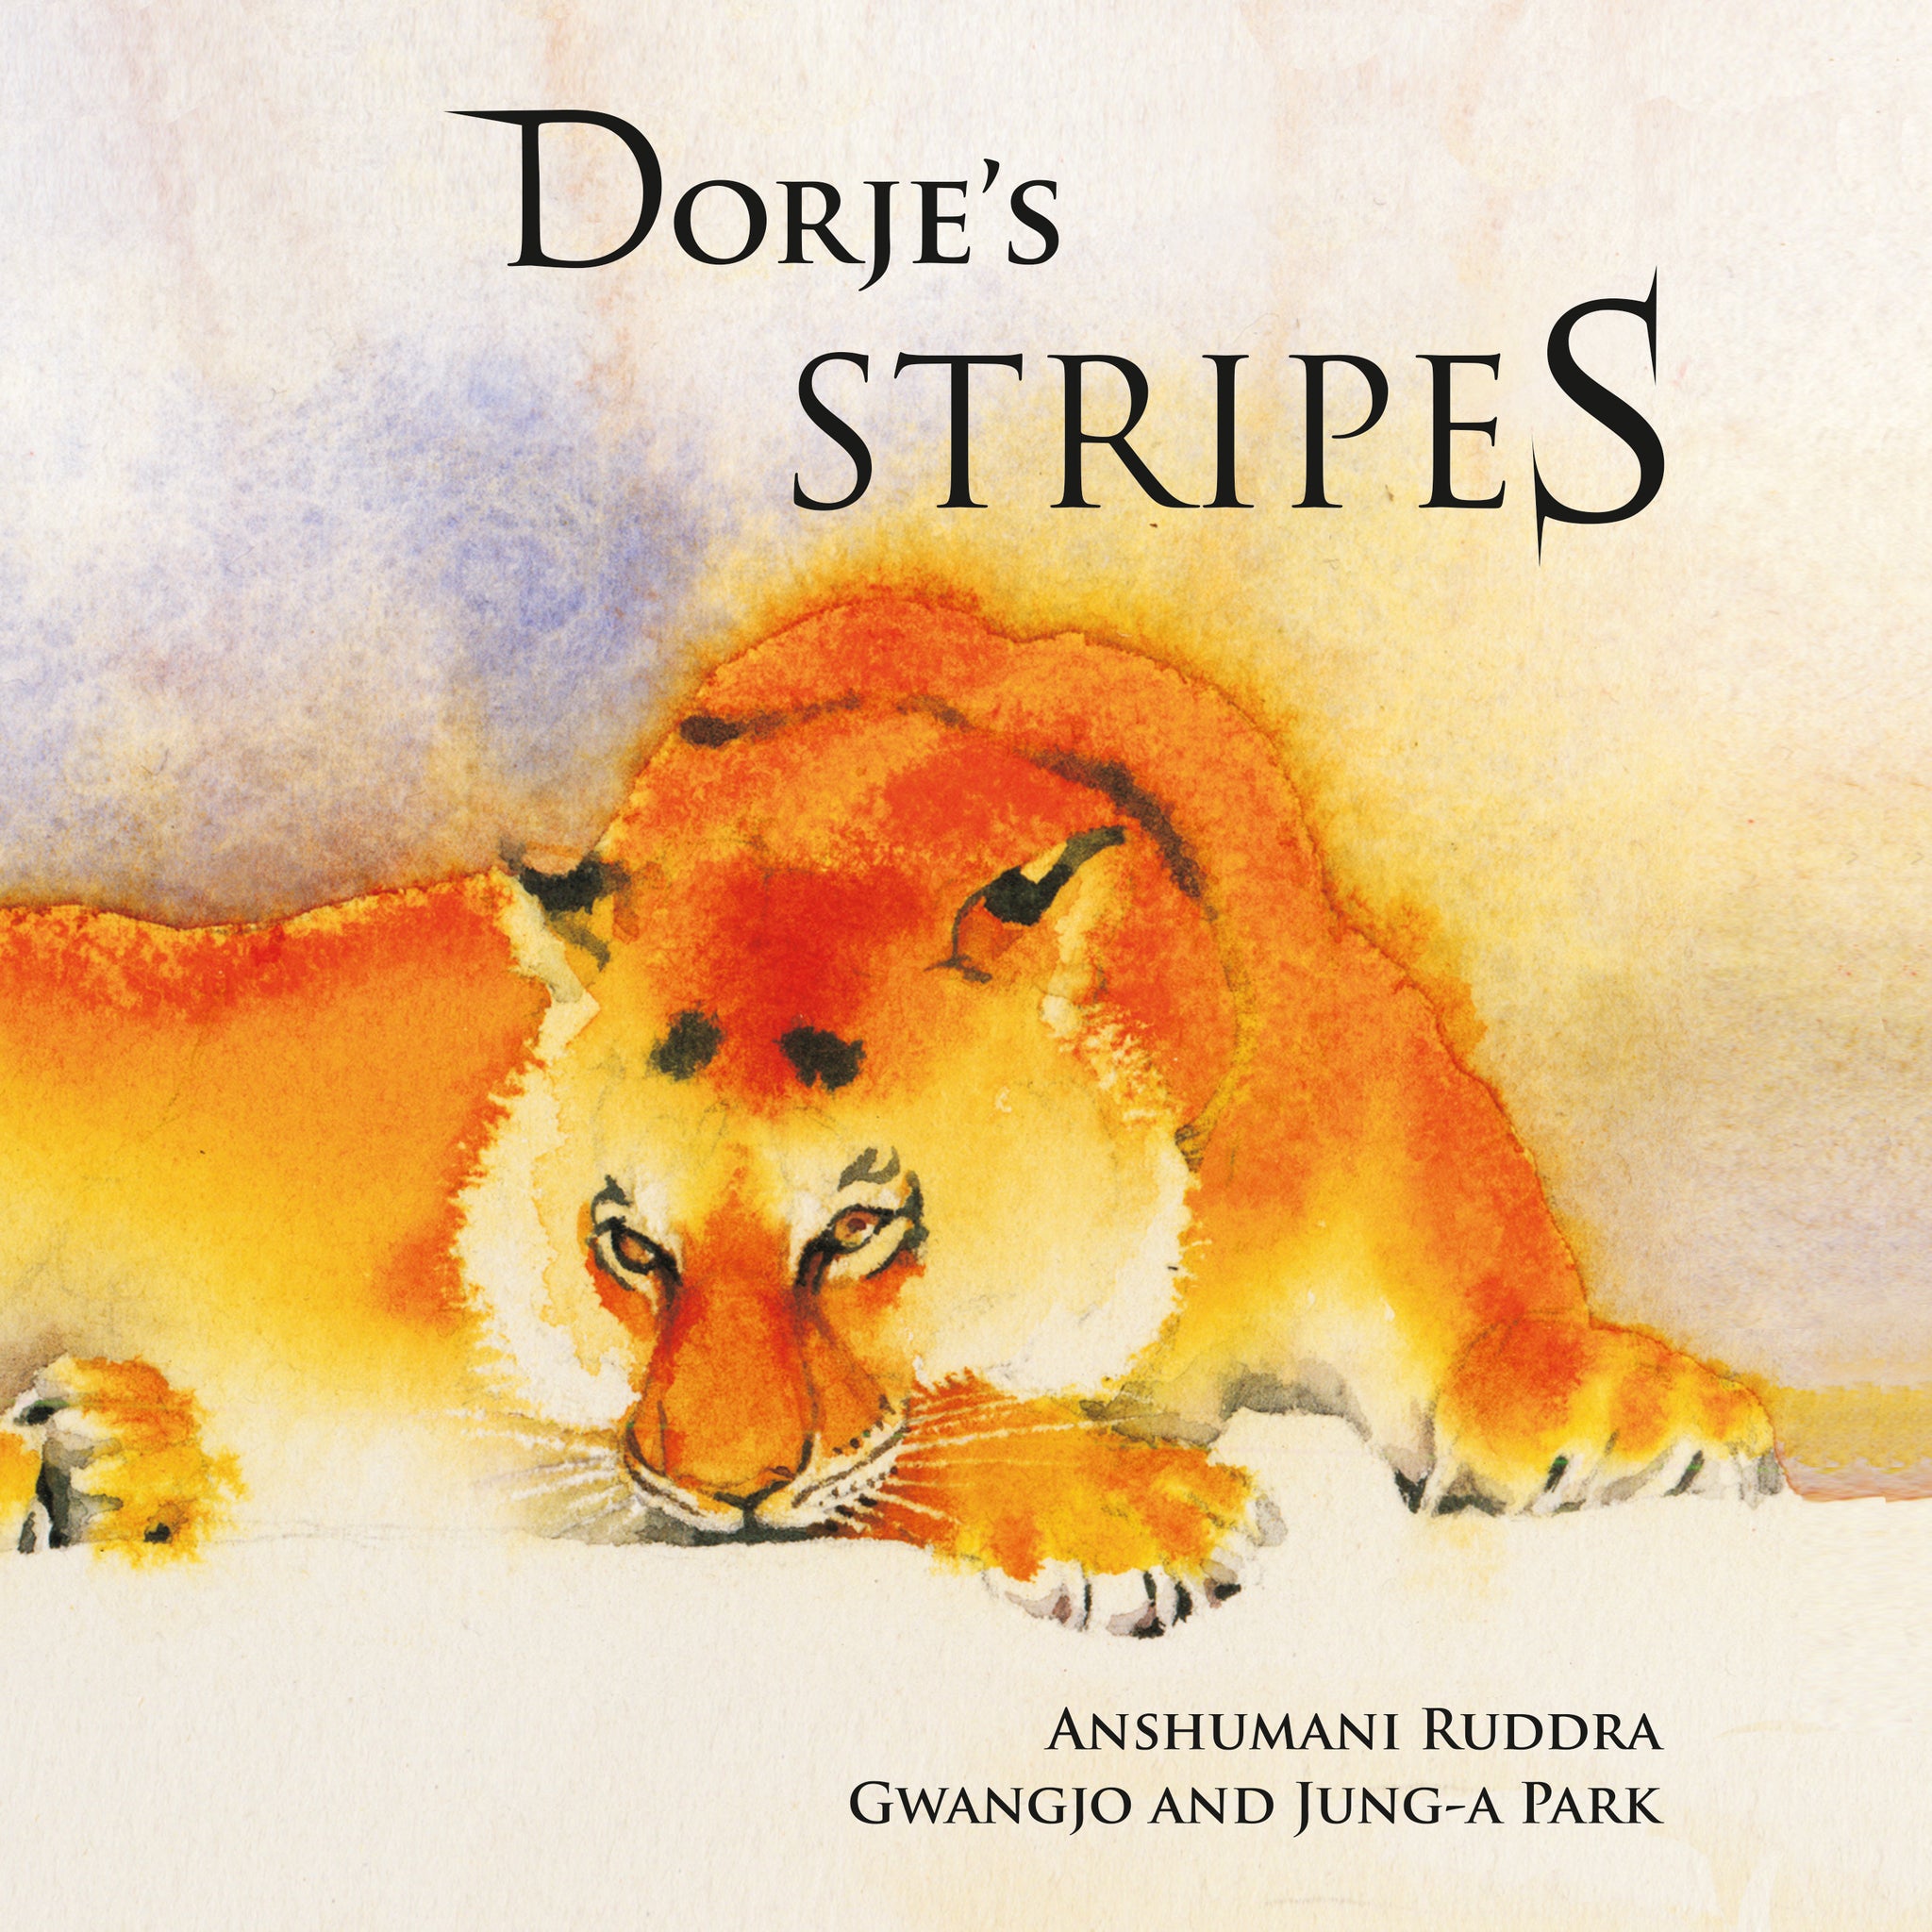 Dorje's Stripes